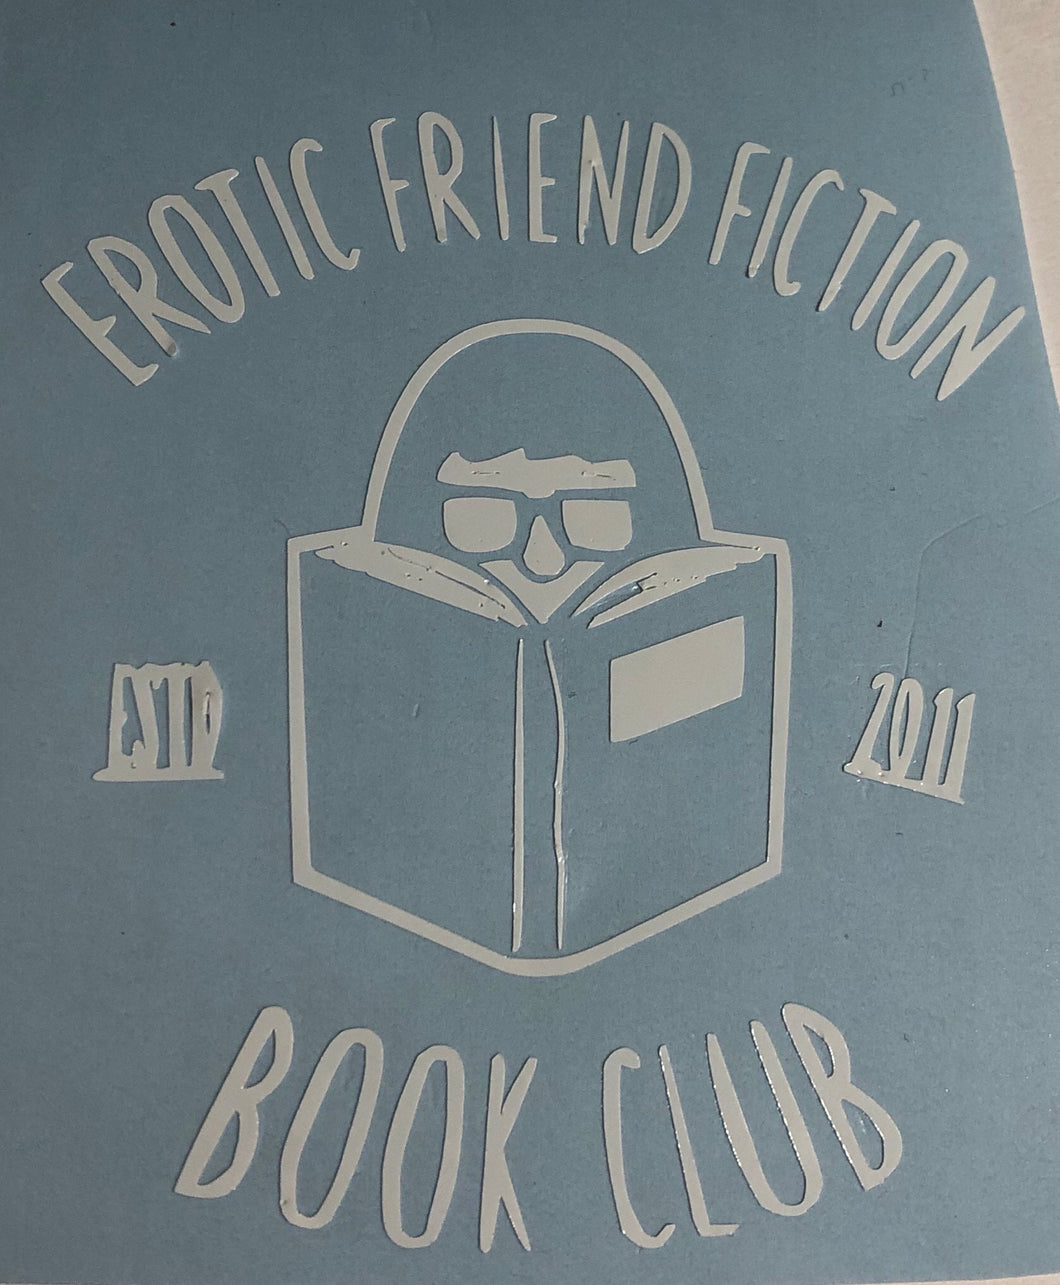 Friend fiction club decal